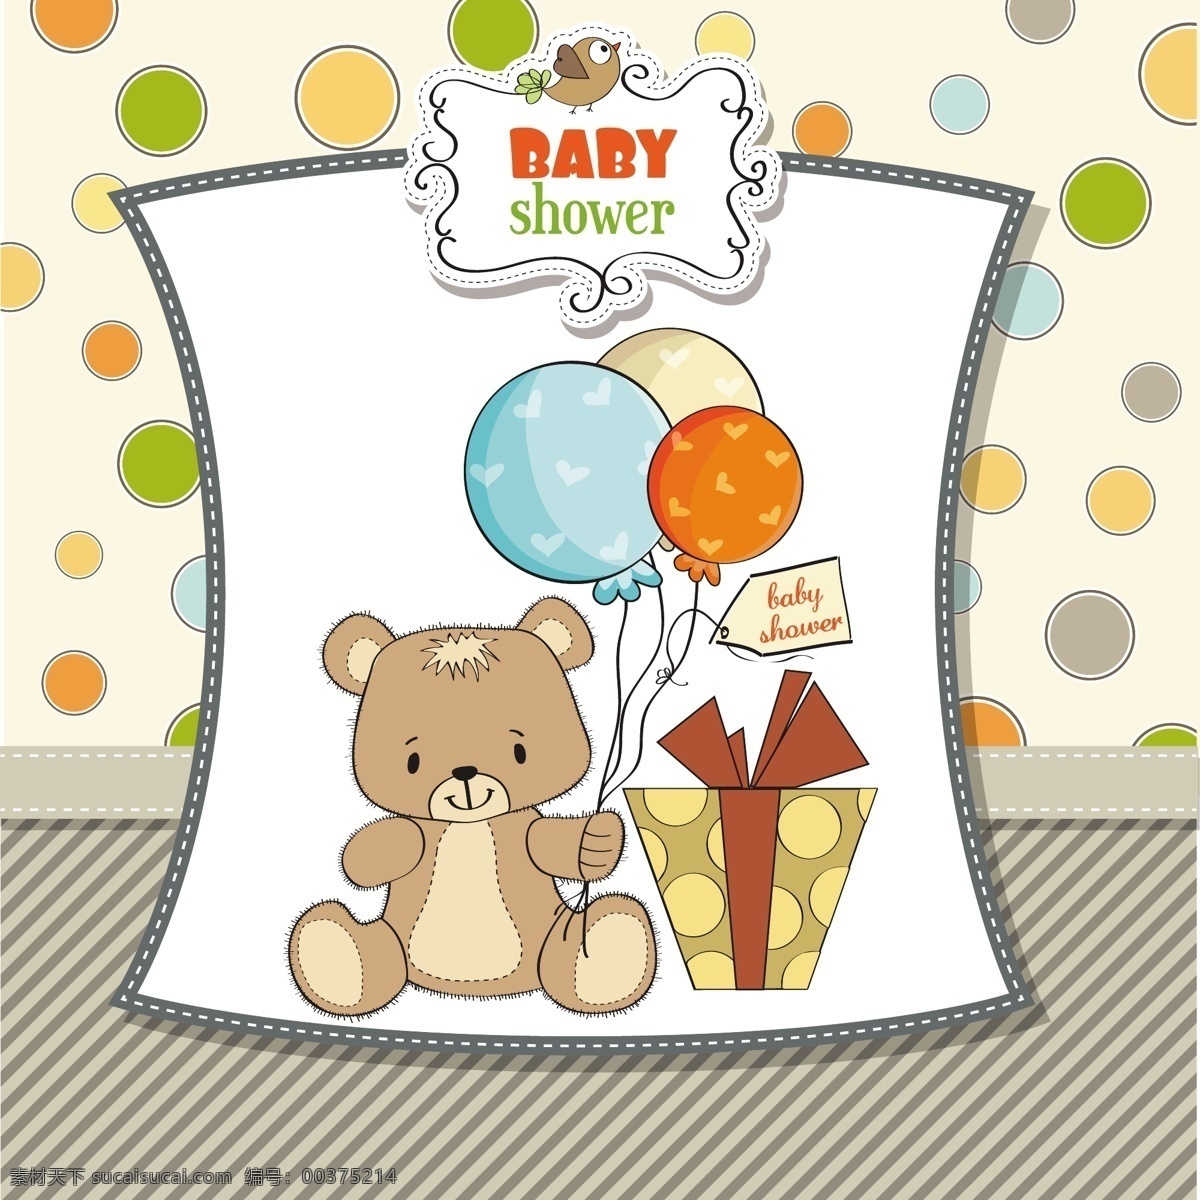 婴儿 洗澡 卡 可爱 泰迪 熊 宝贝 标签 聚会 邀请卡 徽章 婴儿淋浴 气球 可爱的熊 庆典 新的 现在 剪贴簿 泰迪熊 淋浴 庆祝 白色